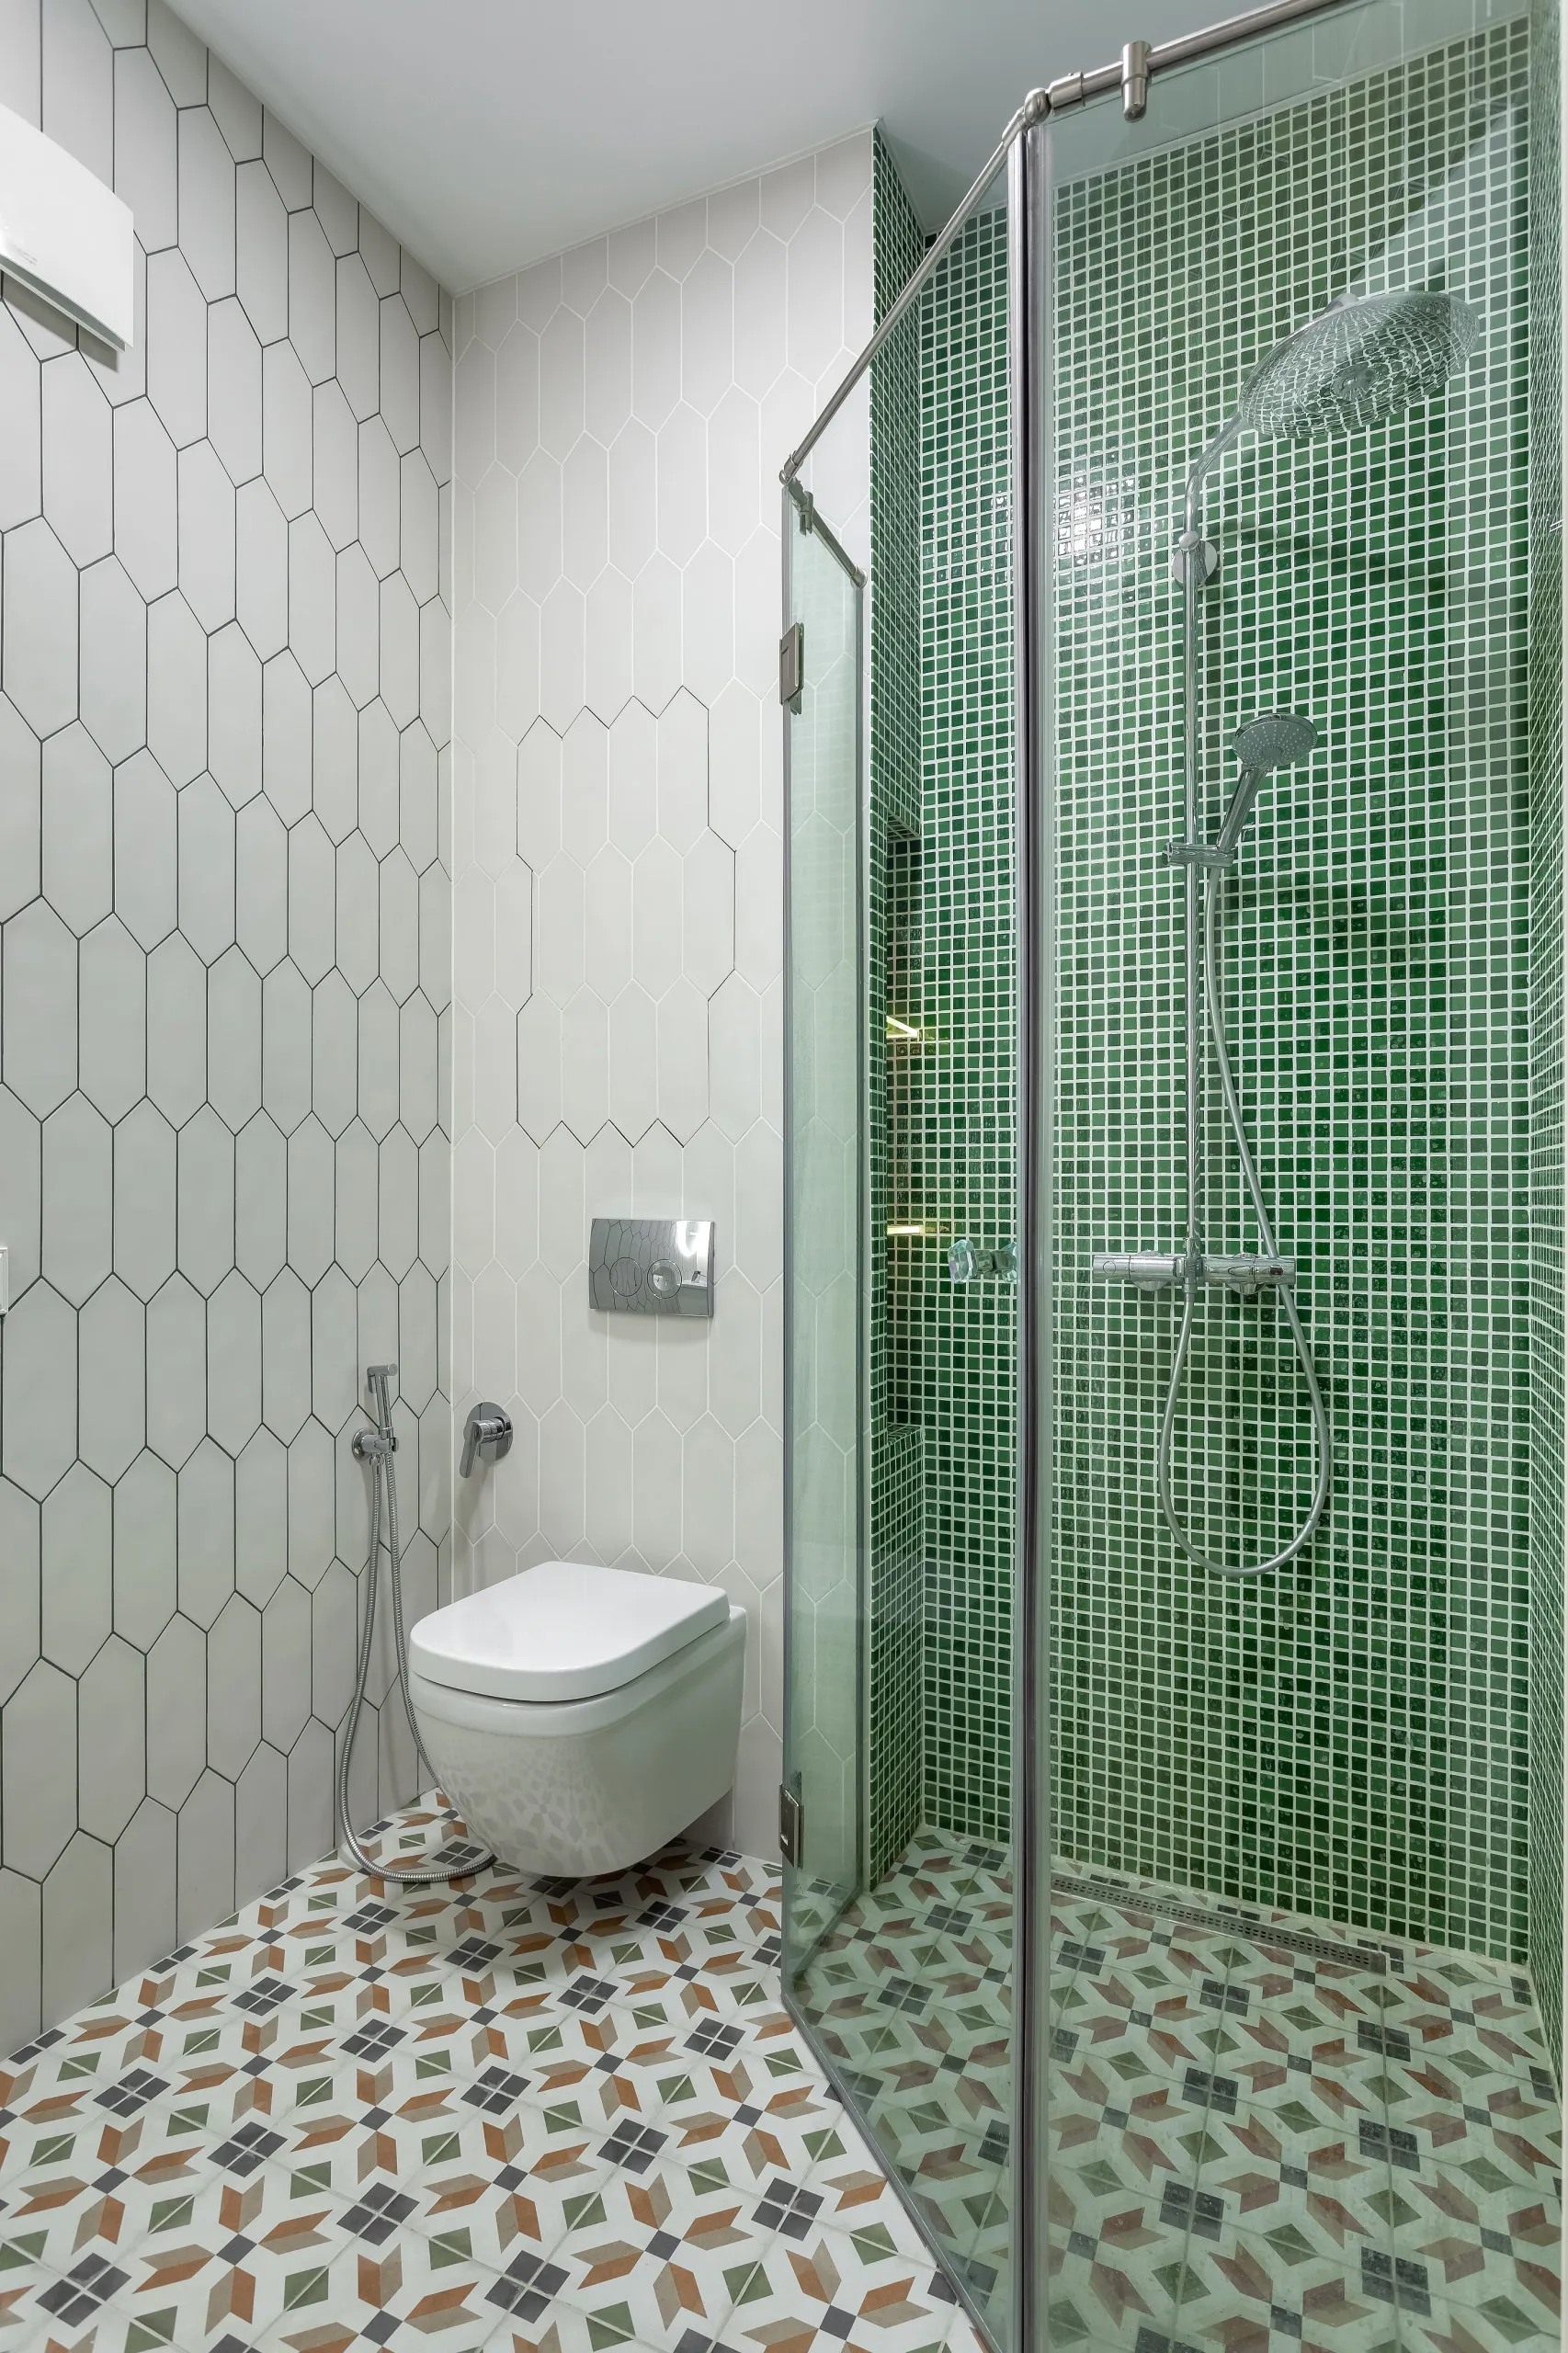 Как использовать мозаику в интерьере ванной